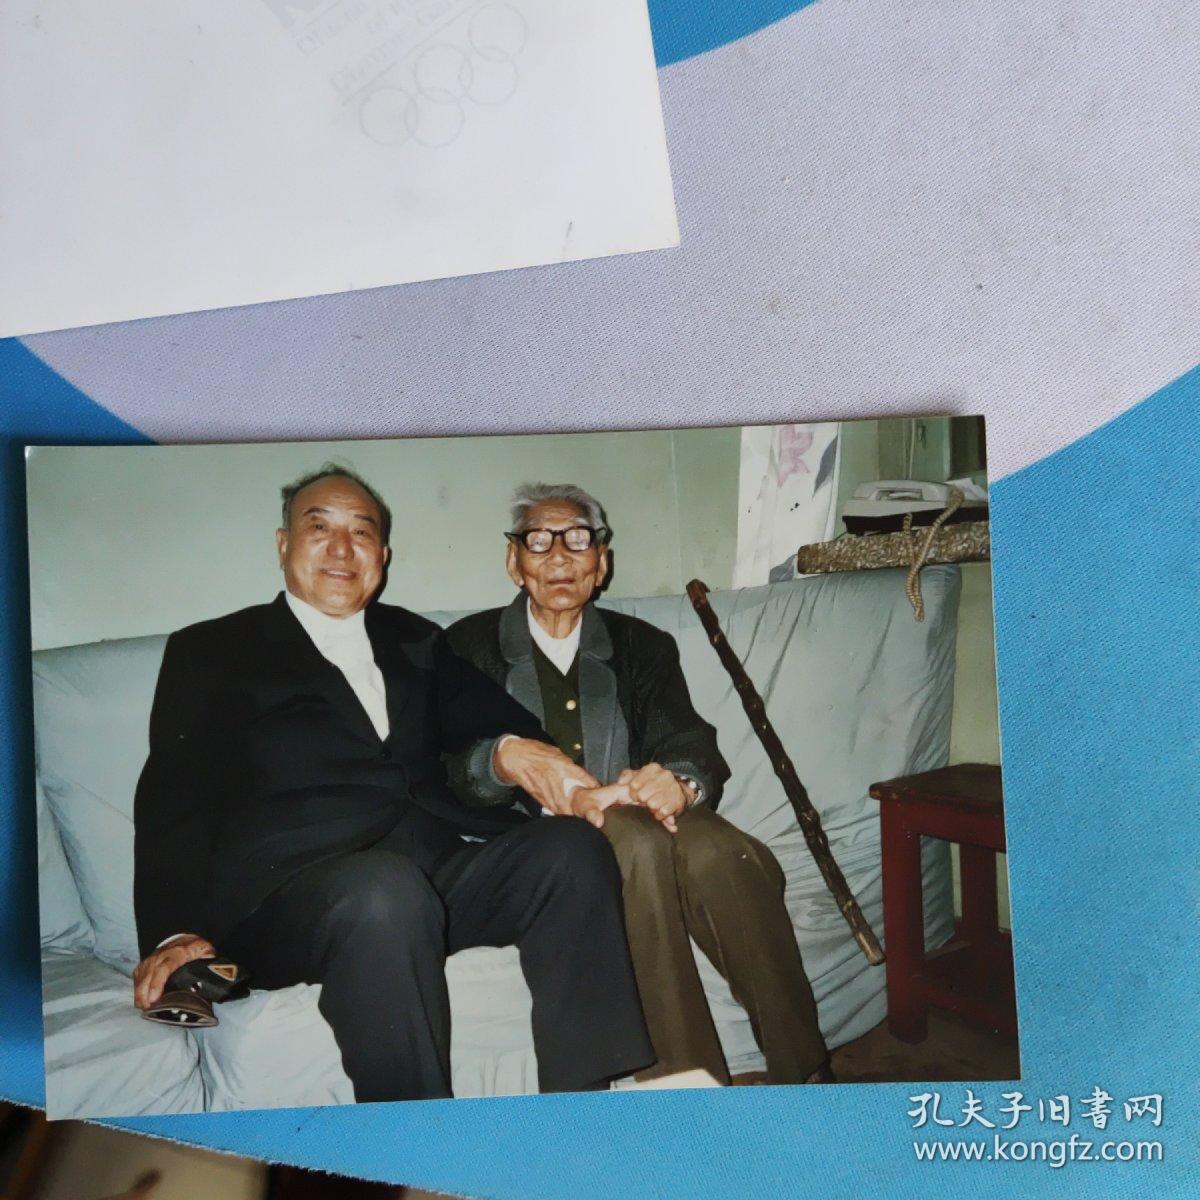 林冬专访老红军贺书贤102岁五寸彩色照片两张照片后有中国老年报社社长林冬留言多多